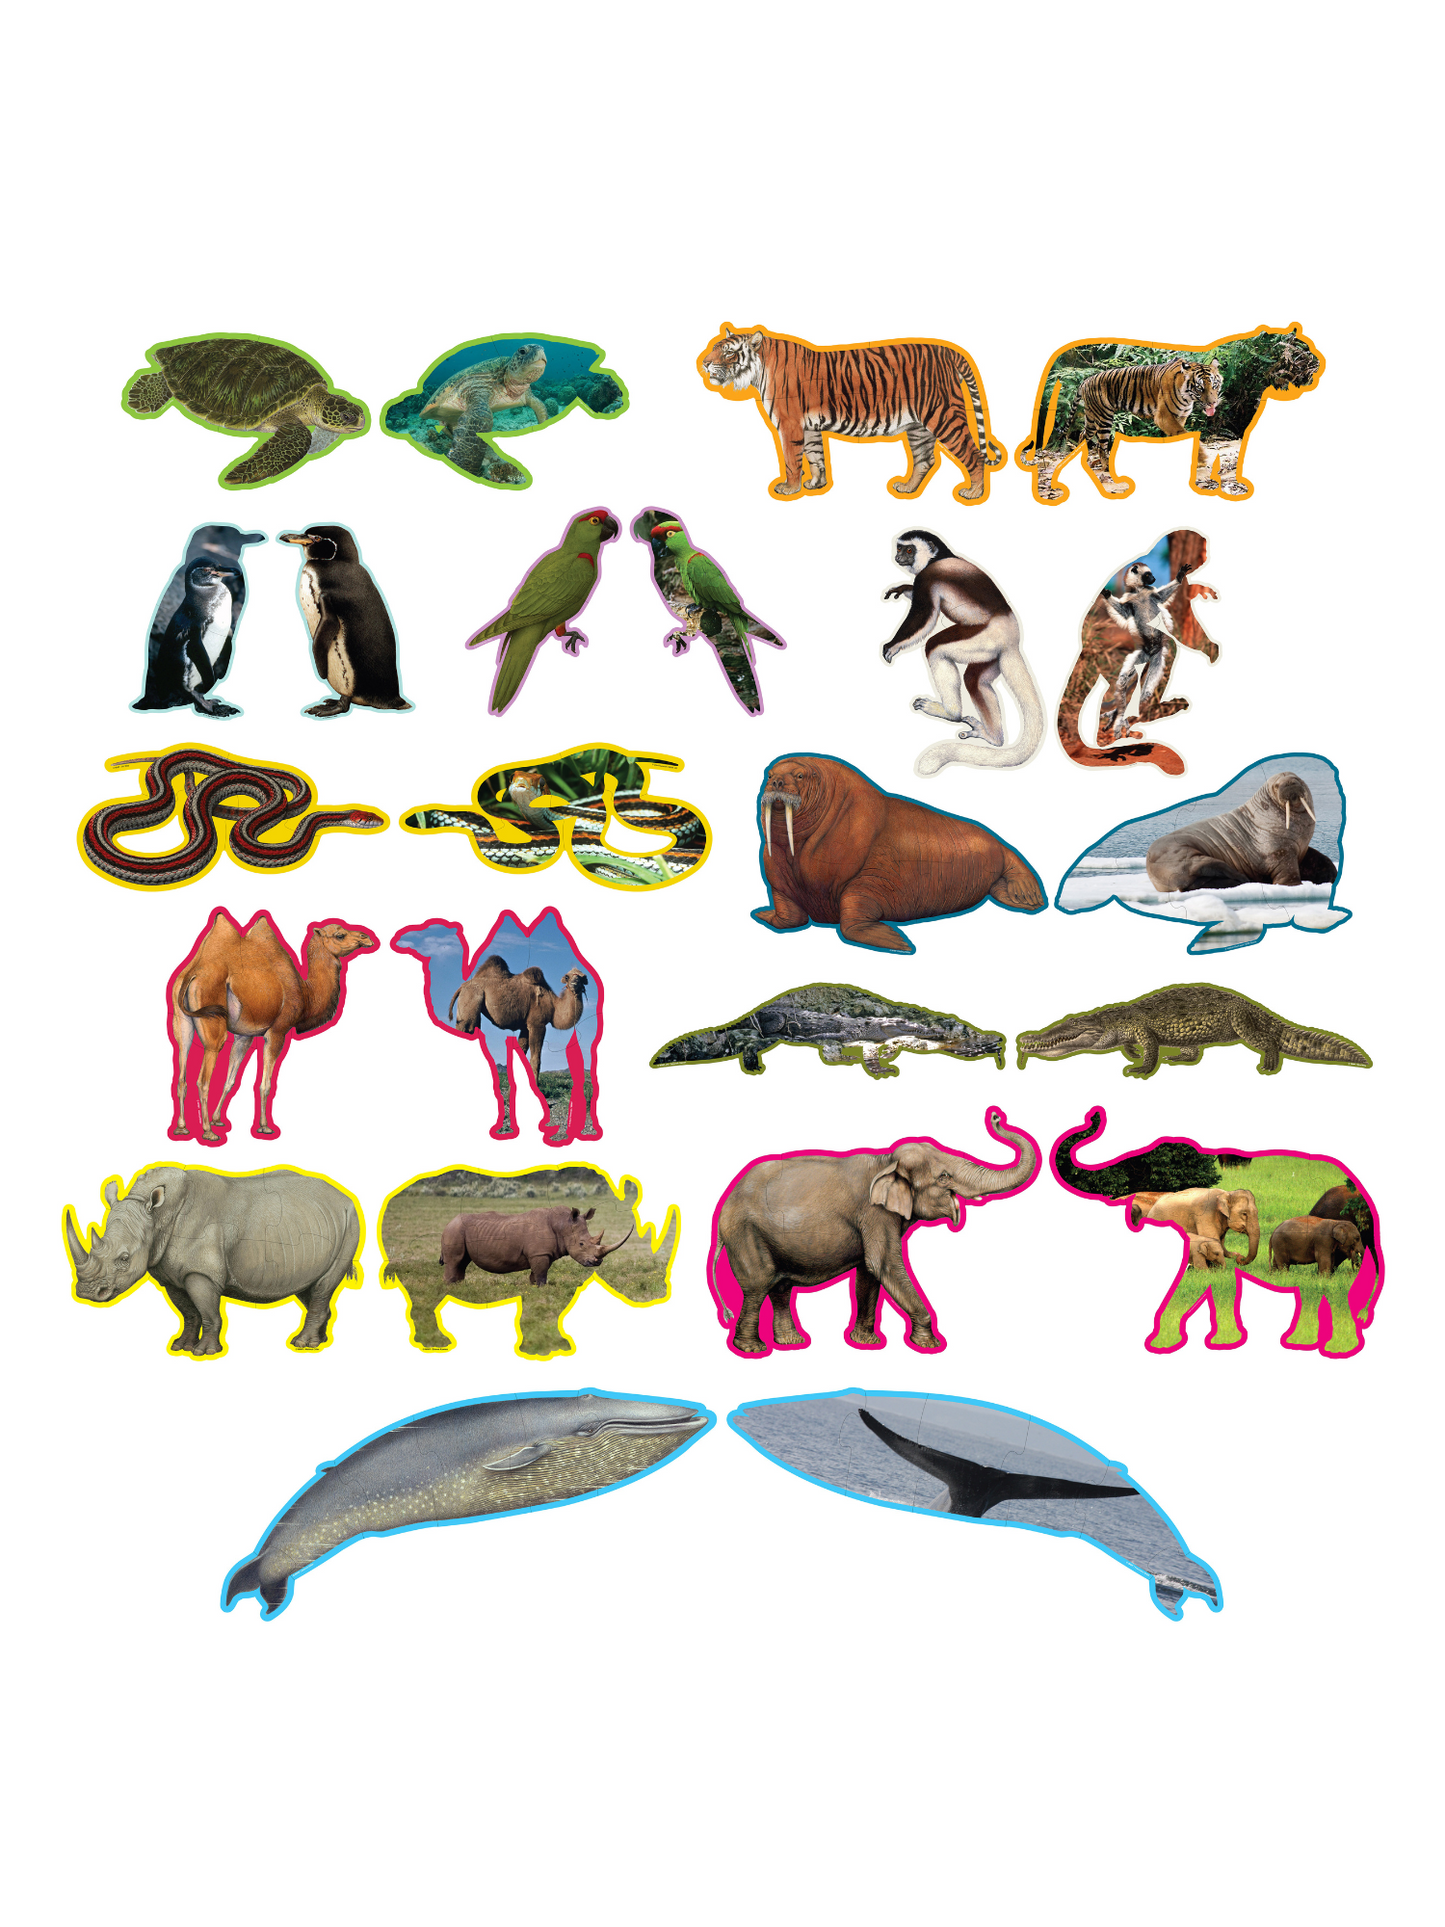 Børnepuslespil med 12 forskellige dyr